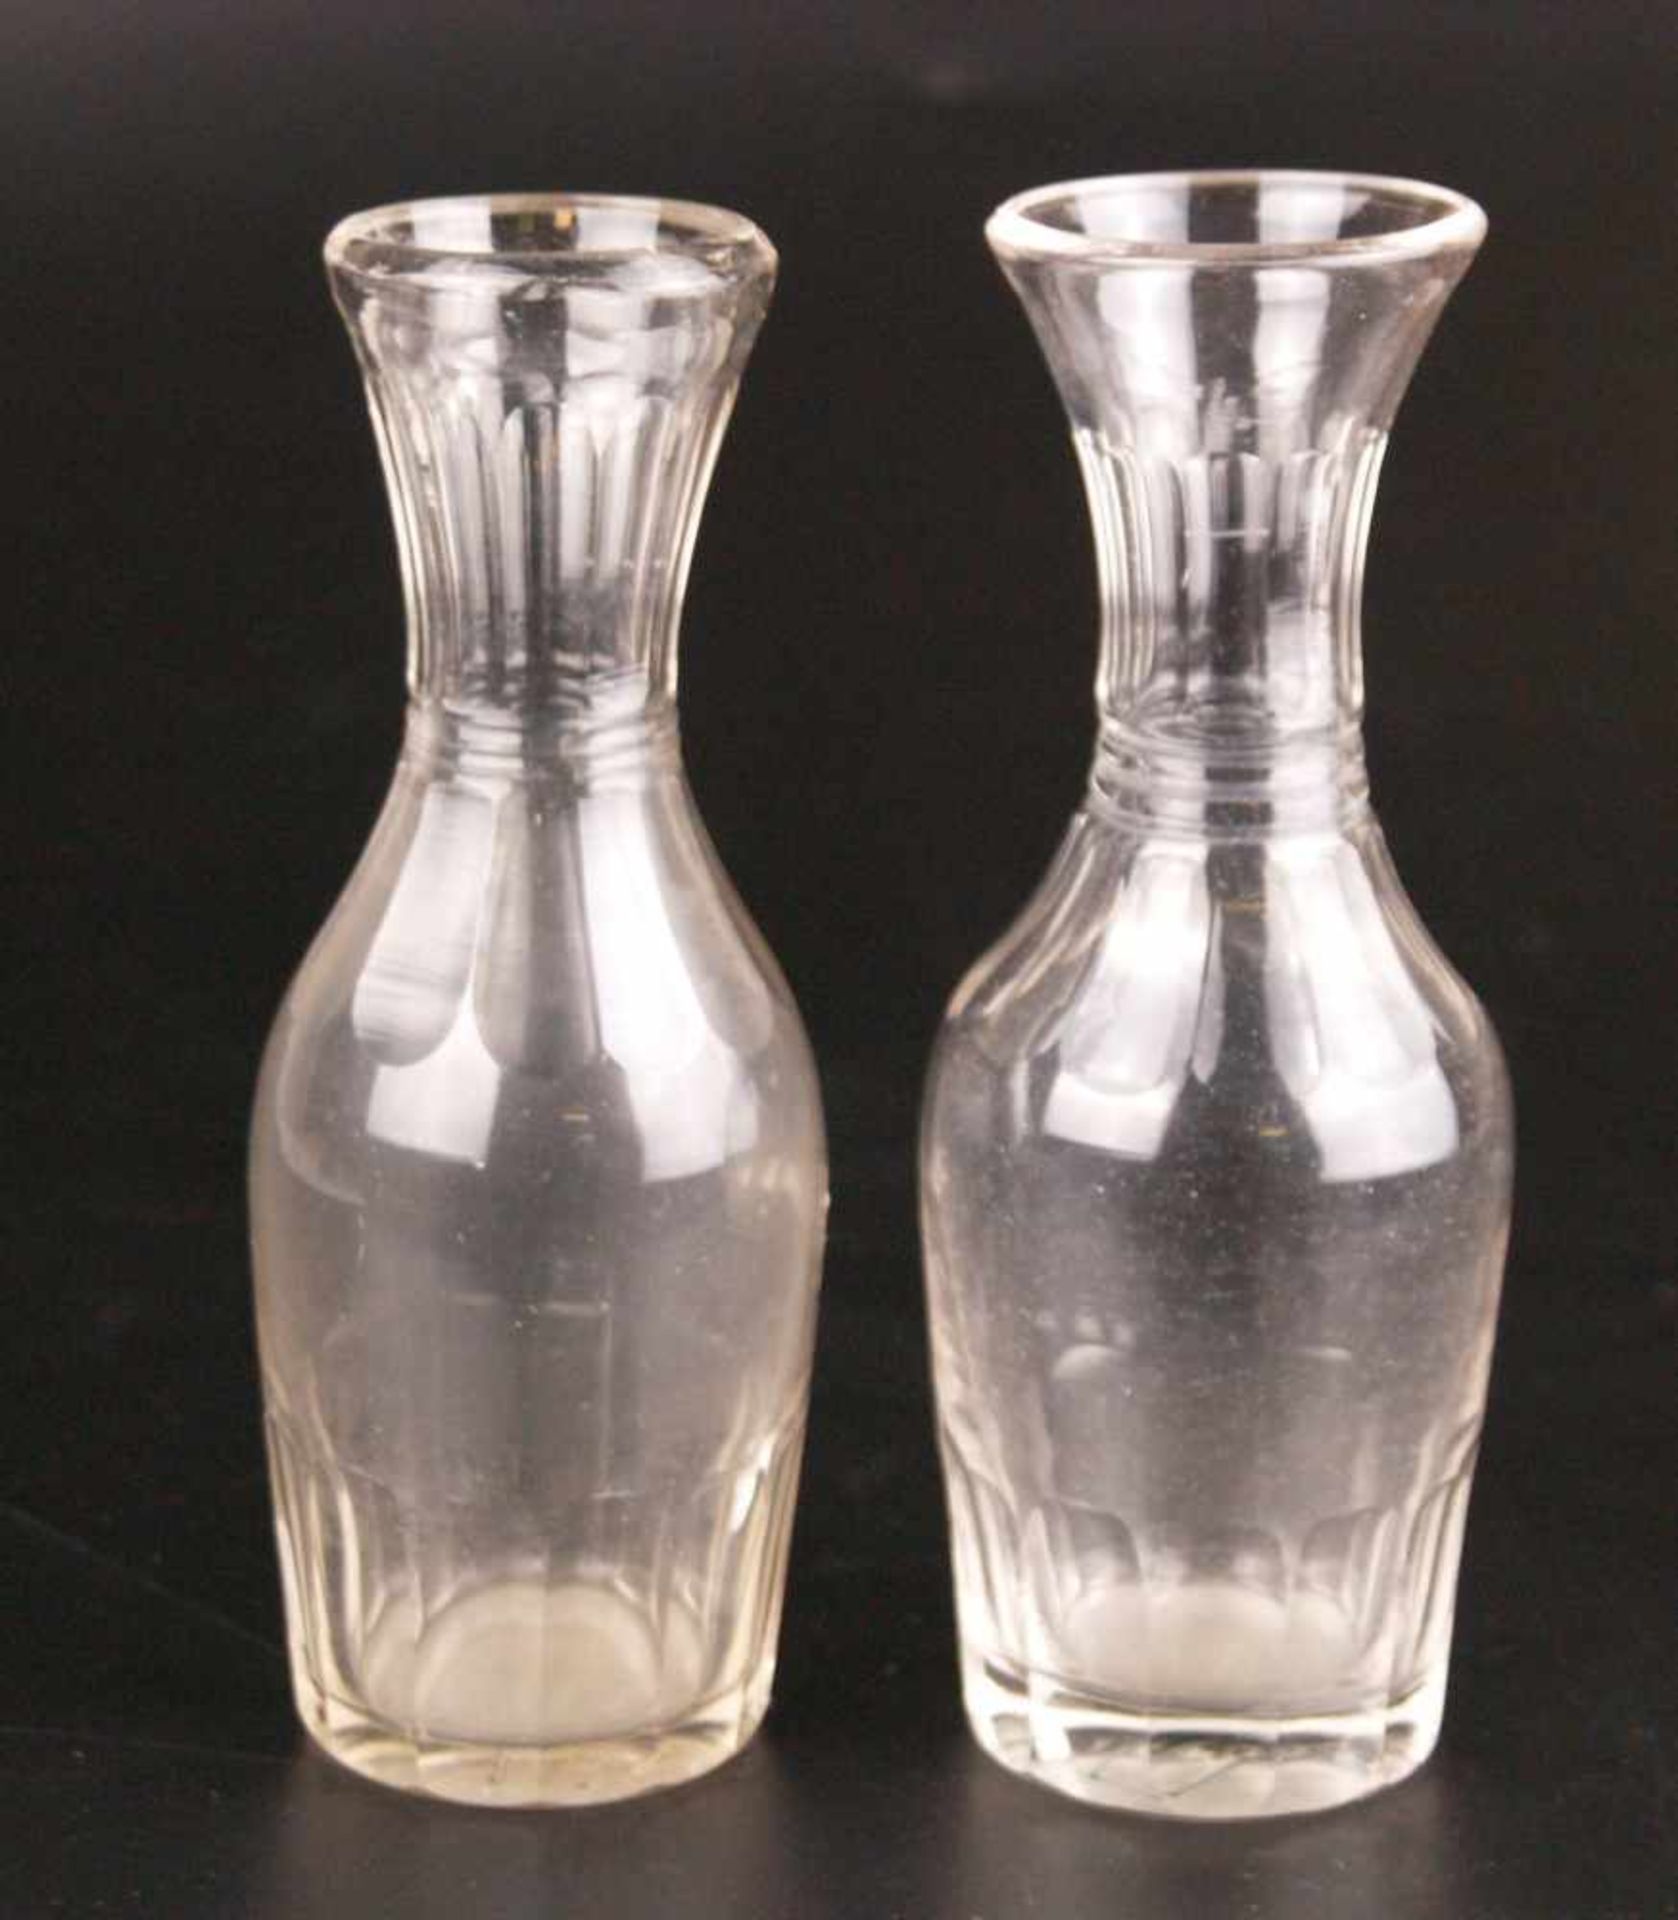 Zwei Likörkaraffen - deutsch, um 1850, Klarglas, geschliffen, leicht unterschiedliche Formen mit